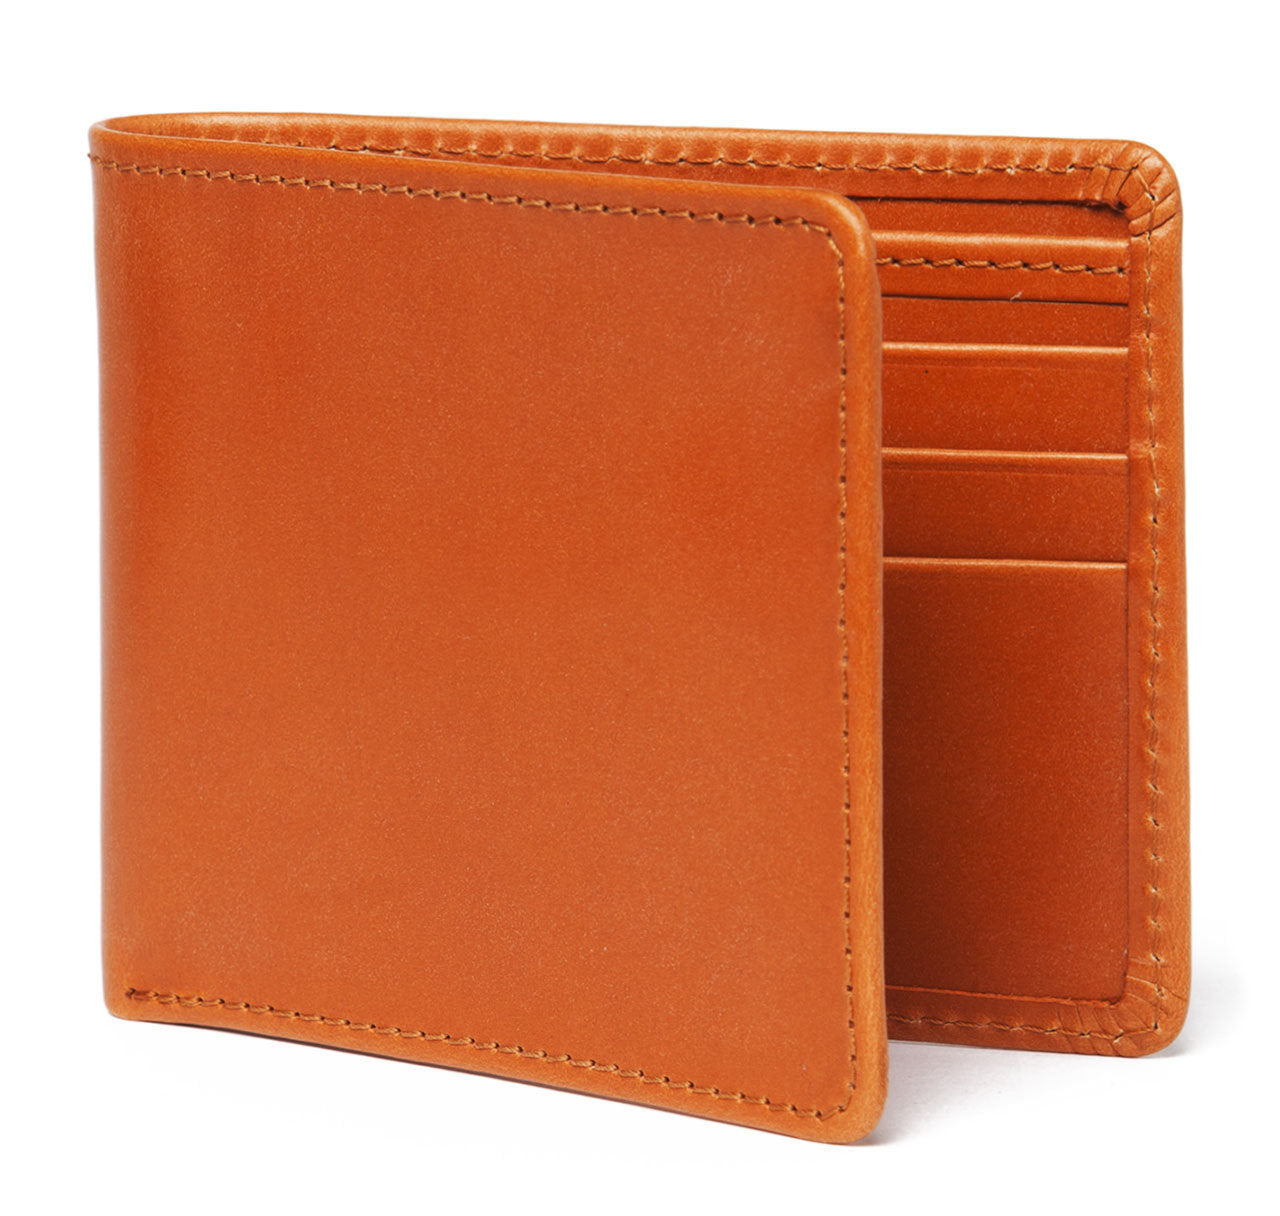 London Tan Leather Billfold Wallet